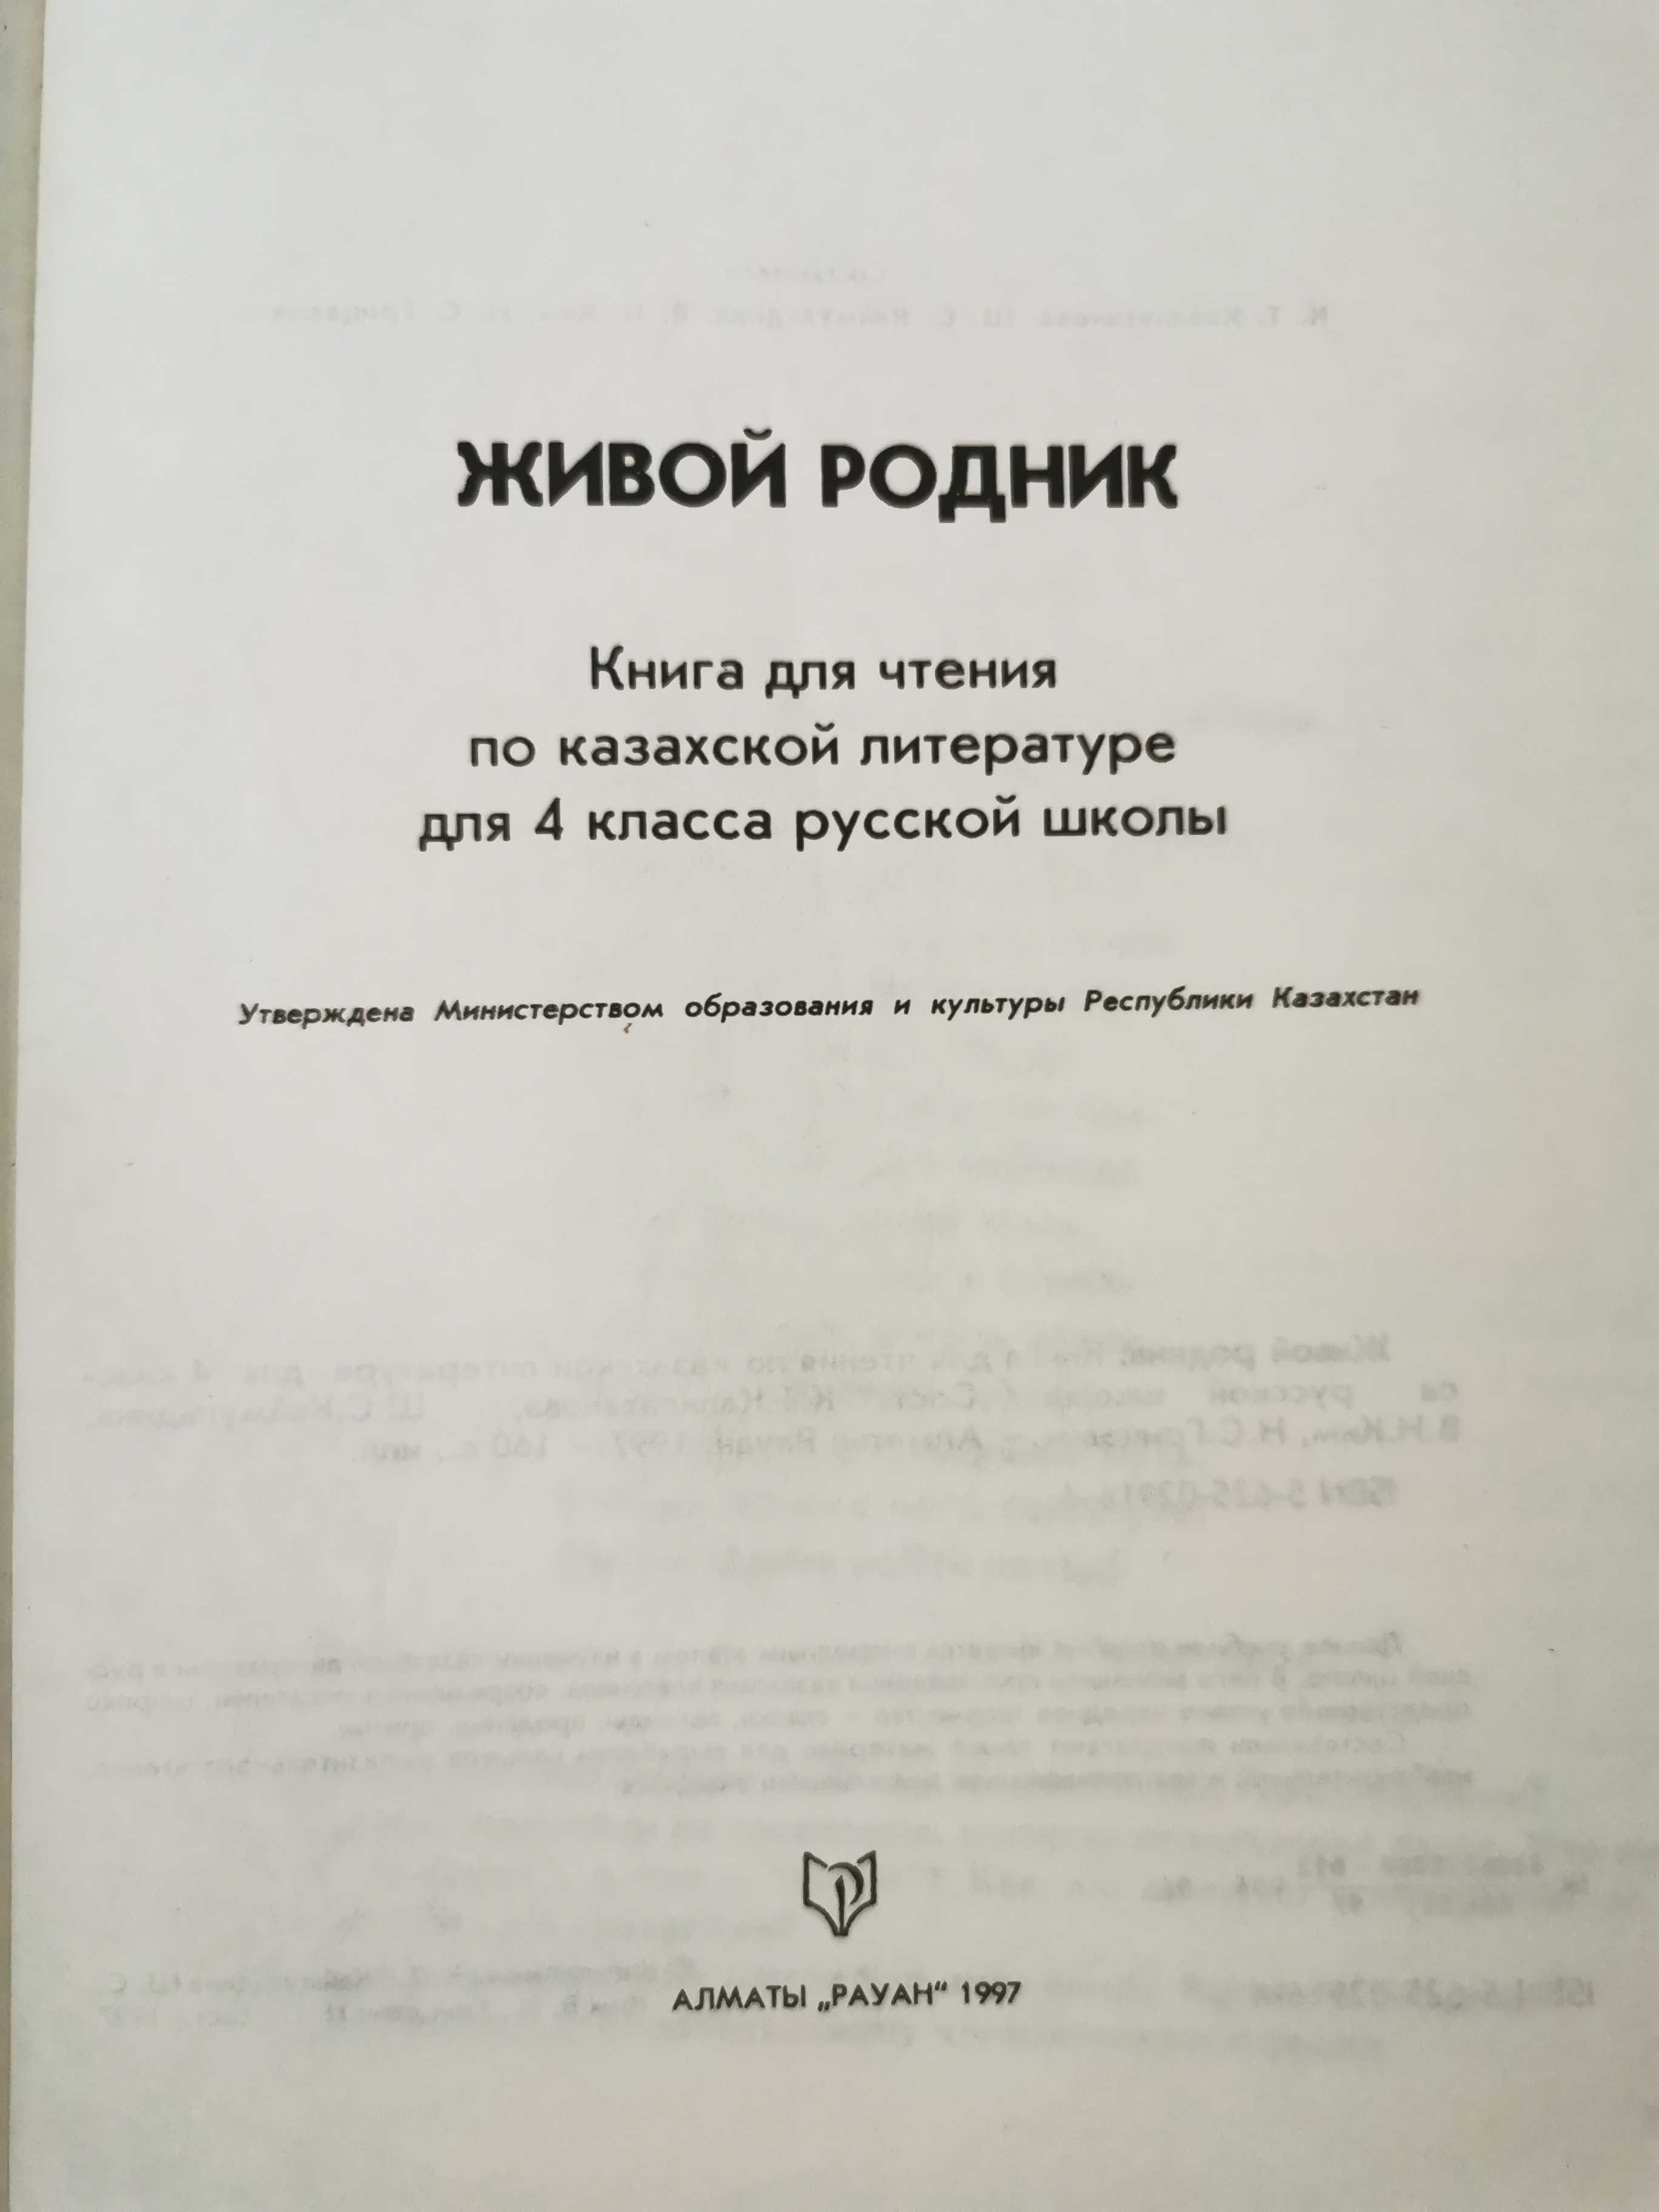 Книги для чтения по казахской литературе для 3, 4 классов русских школ